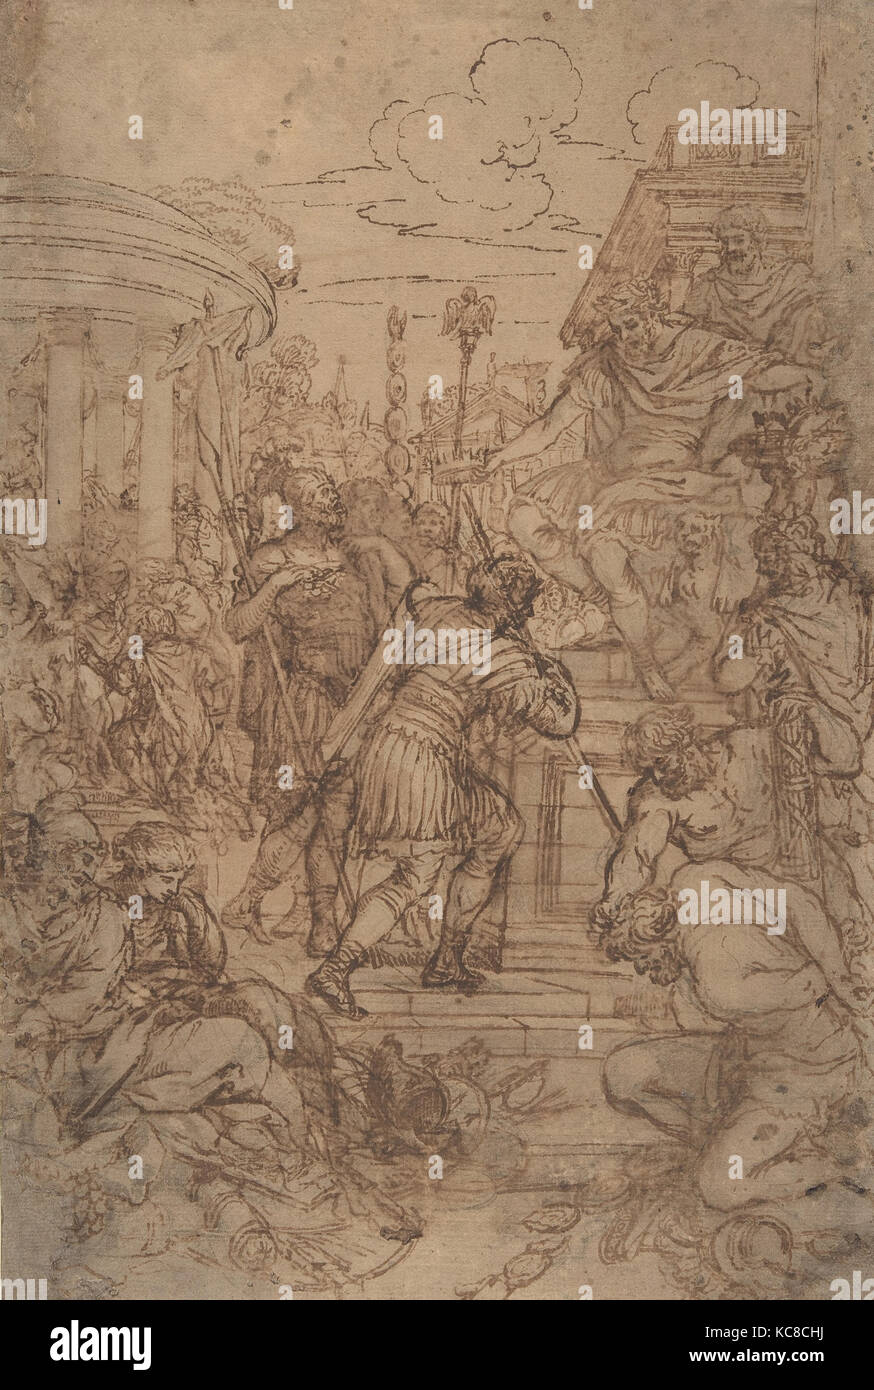 Study for the Age of Bronze, Pietro da Cortona, 1637 Stock Photo